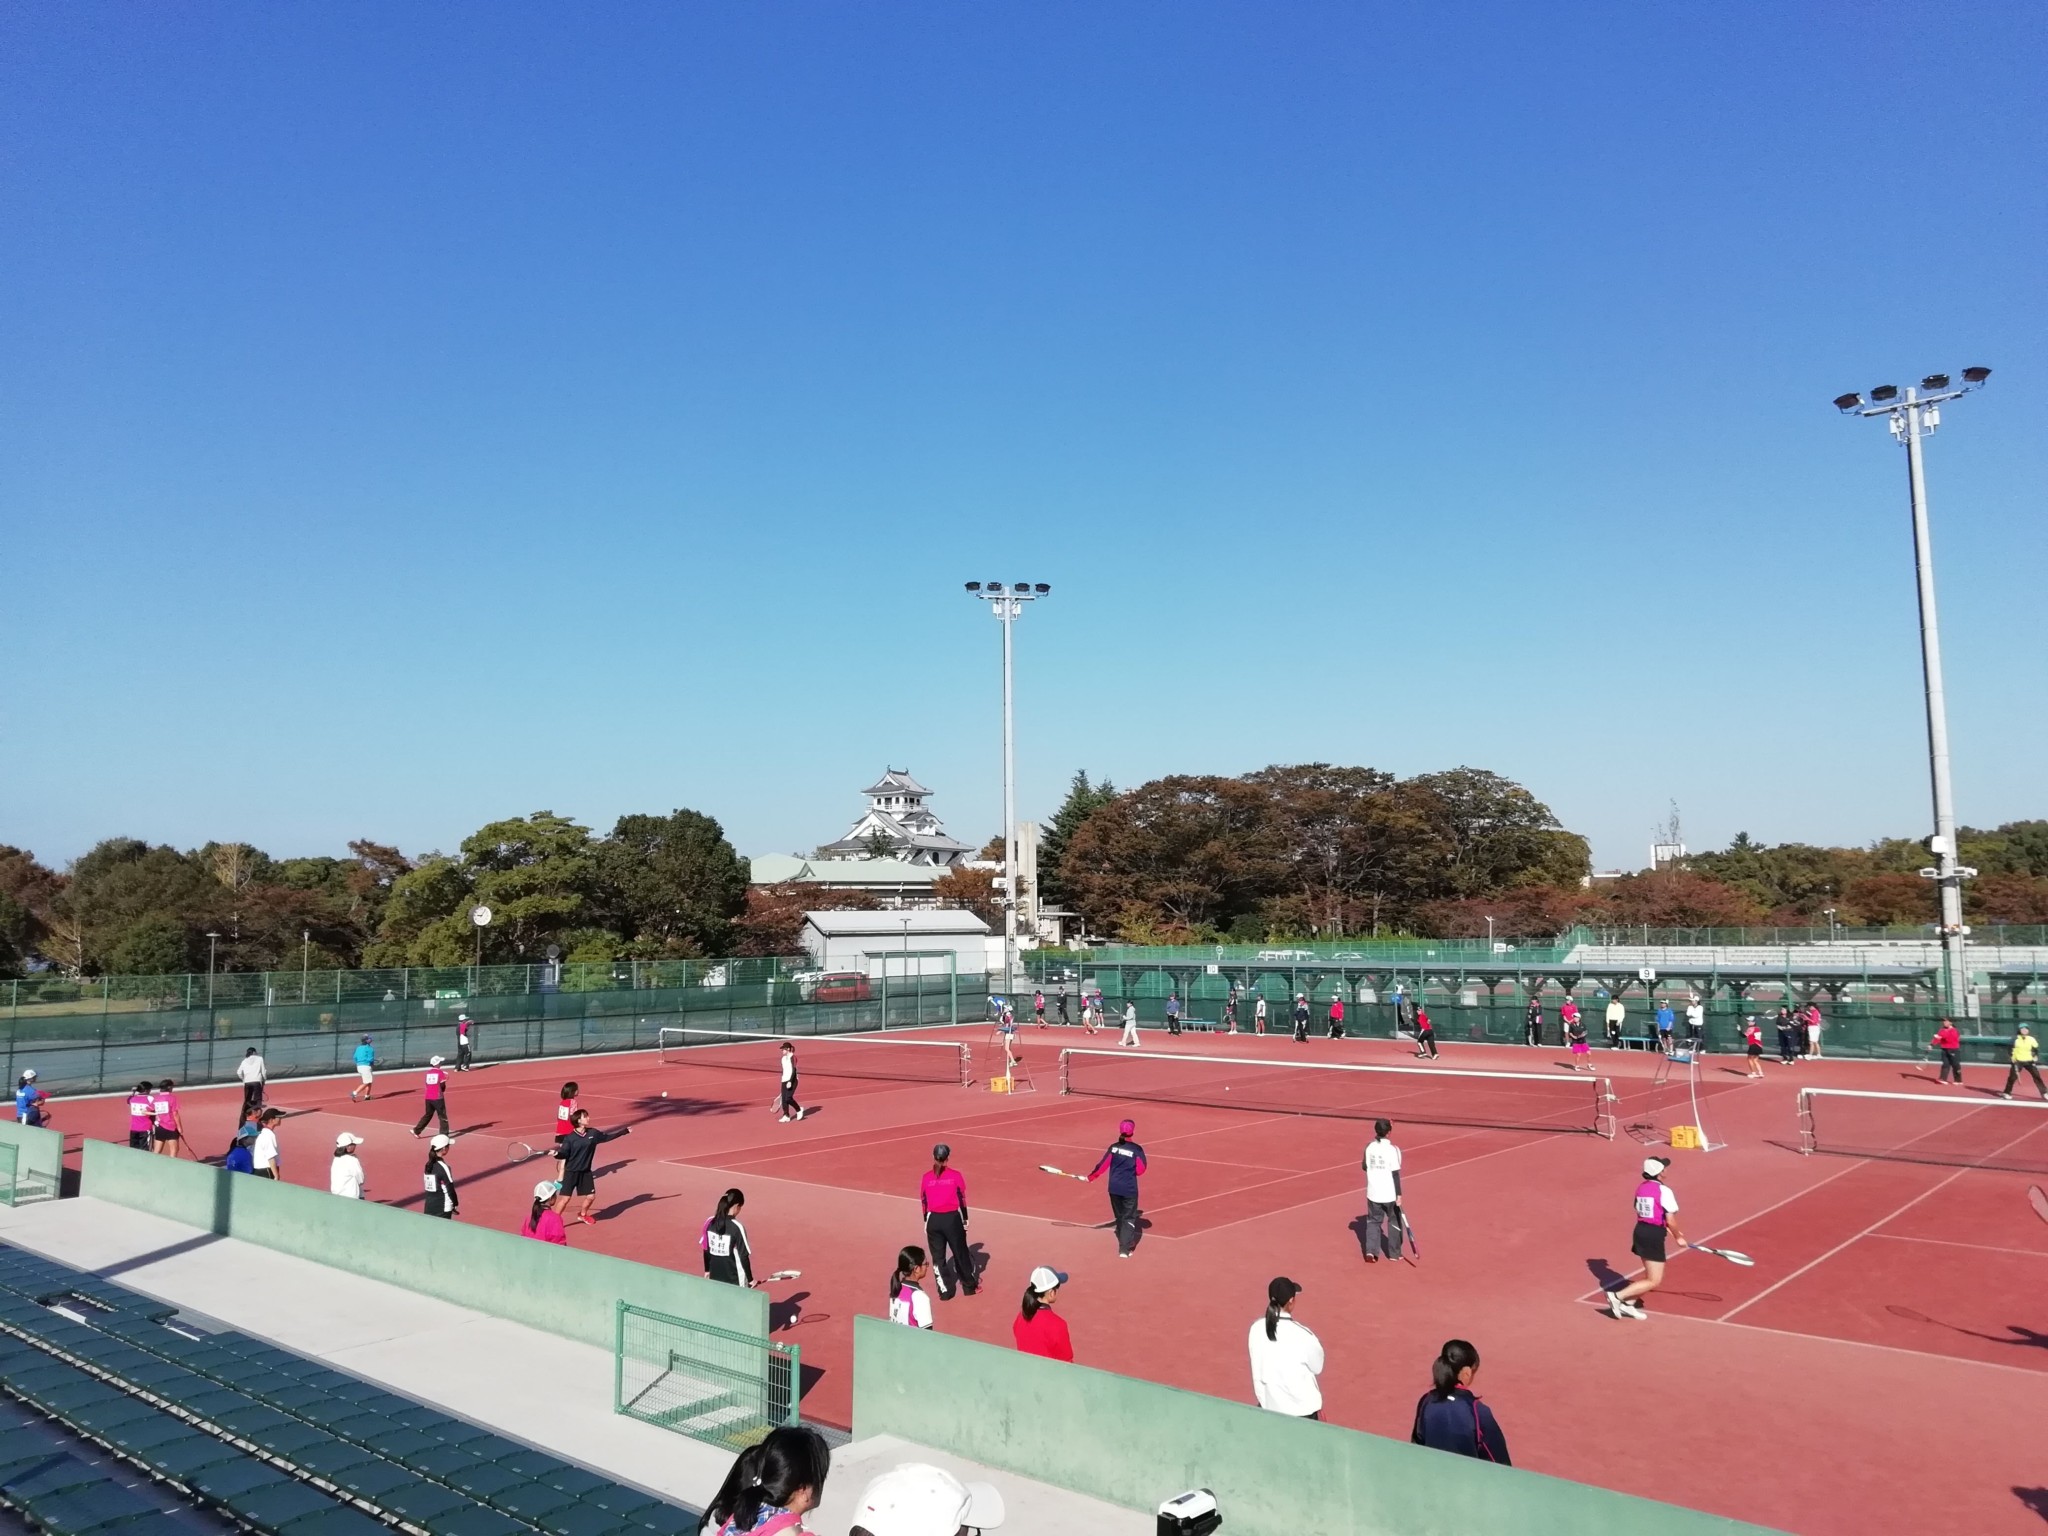 2018/10/25〜27 ソフトテニス滋賀県高校秋季大会